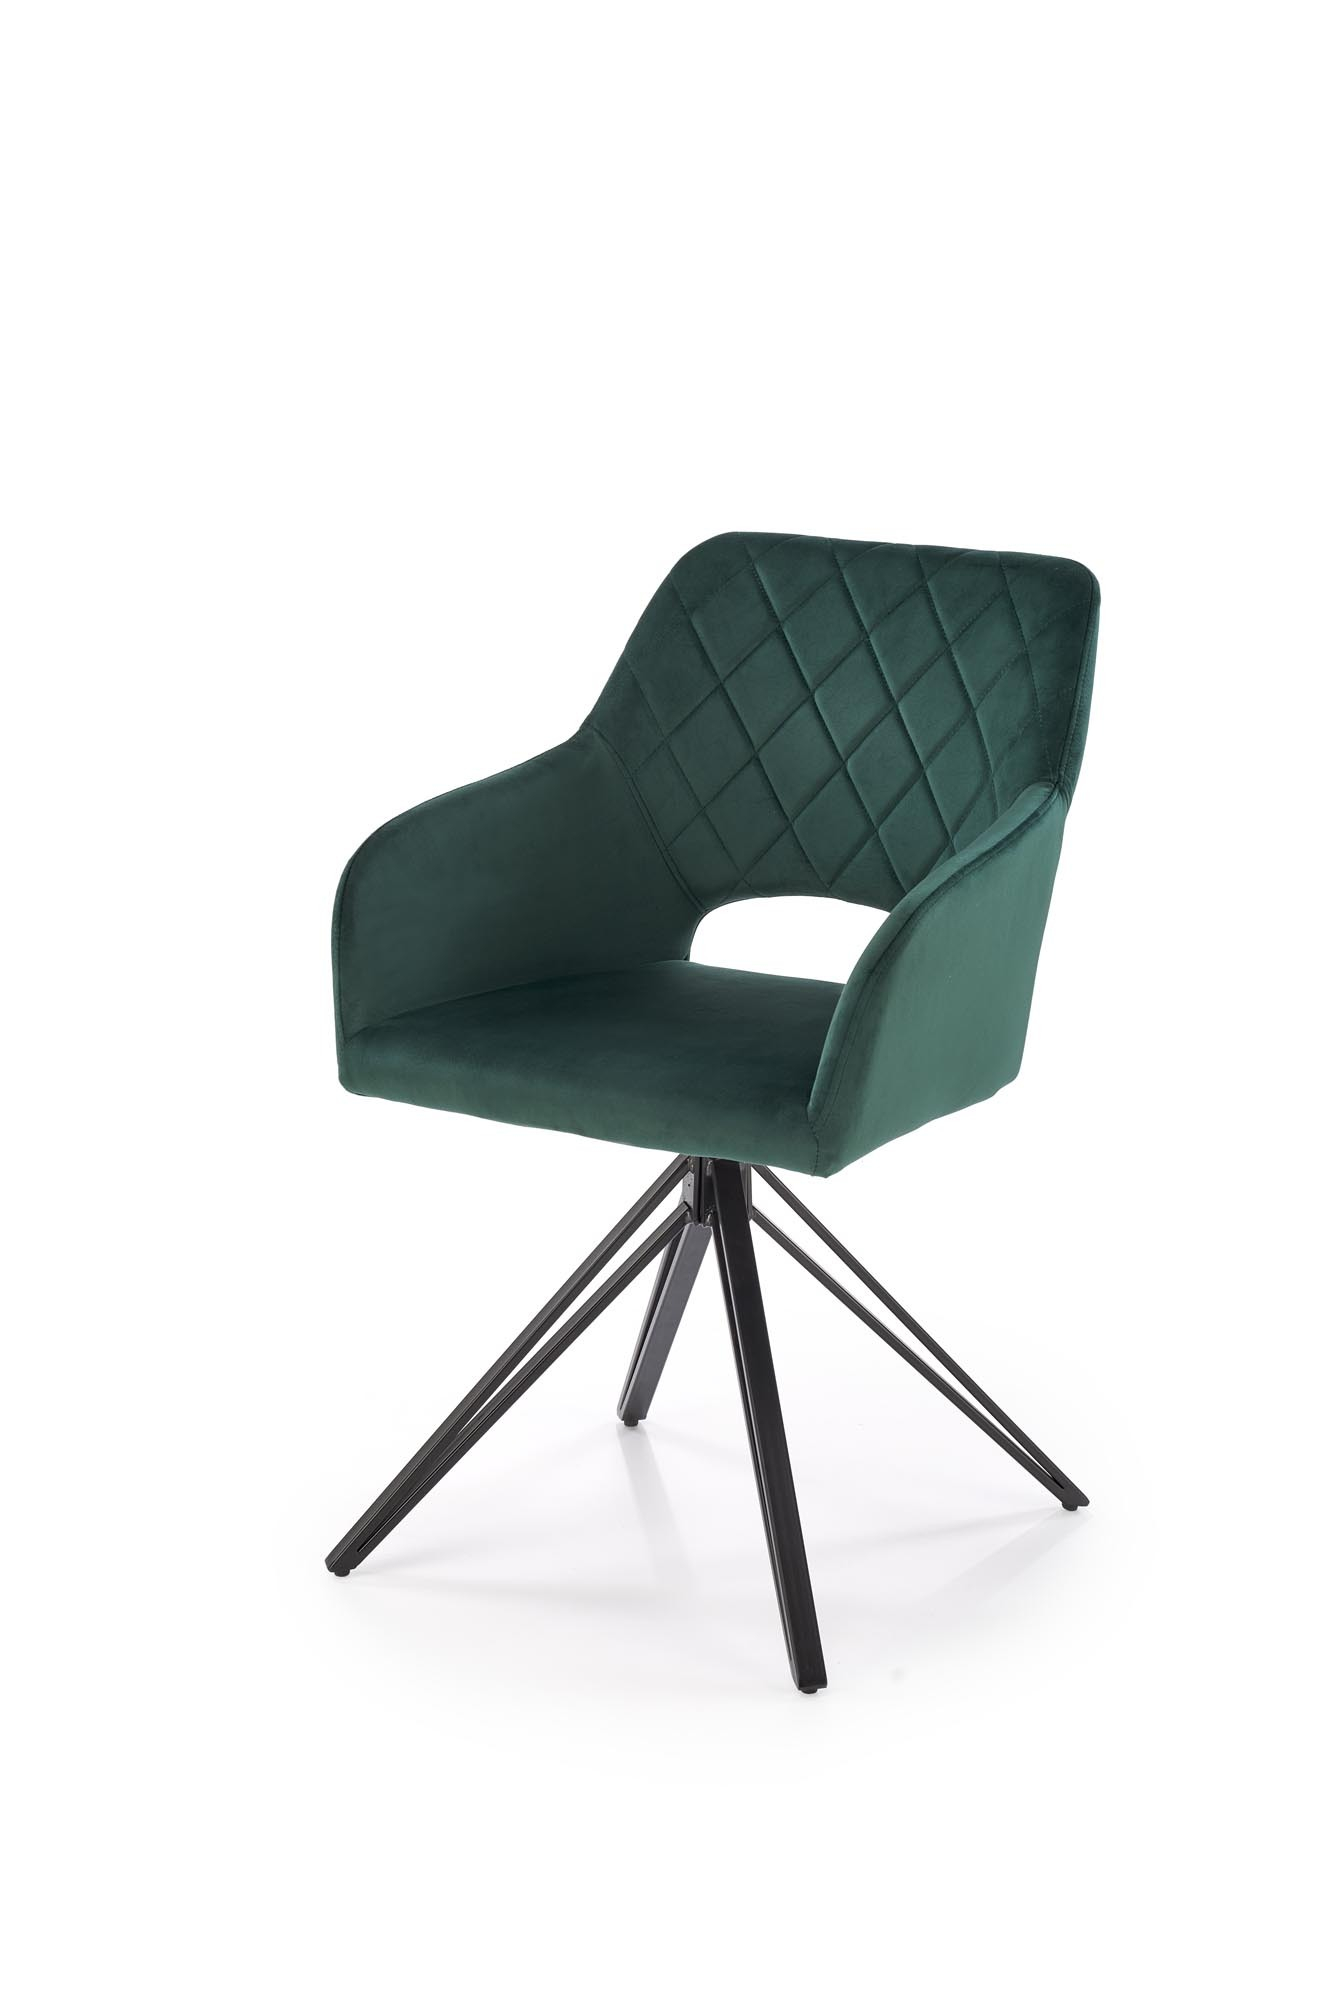 K535 krzesło obrotowe ciemny zielony